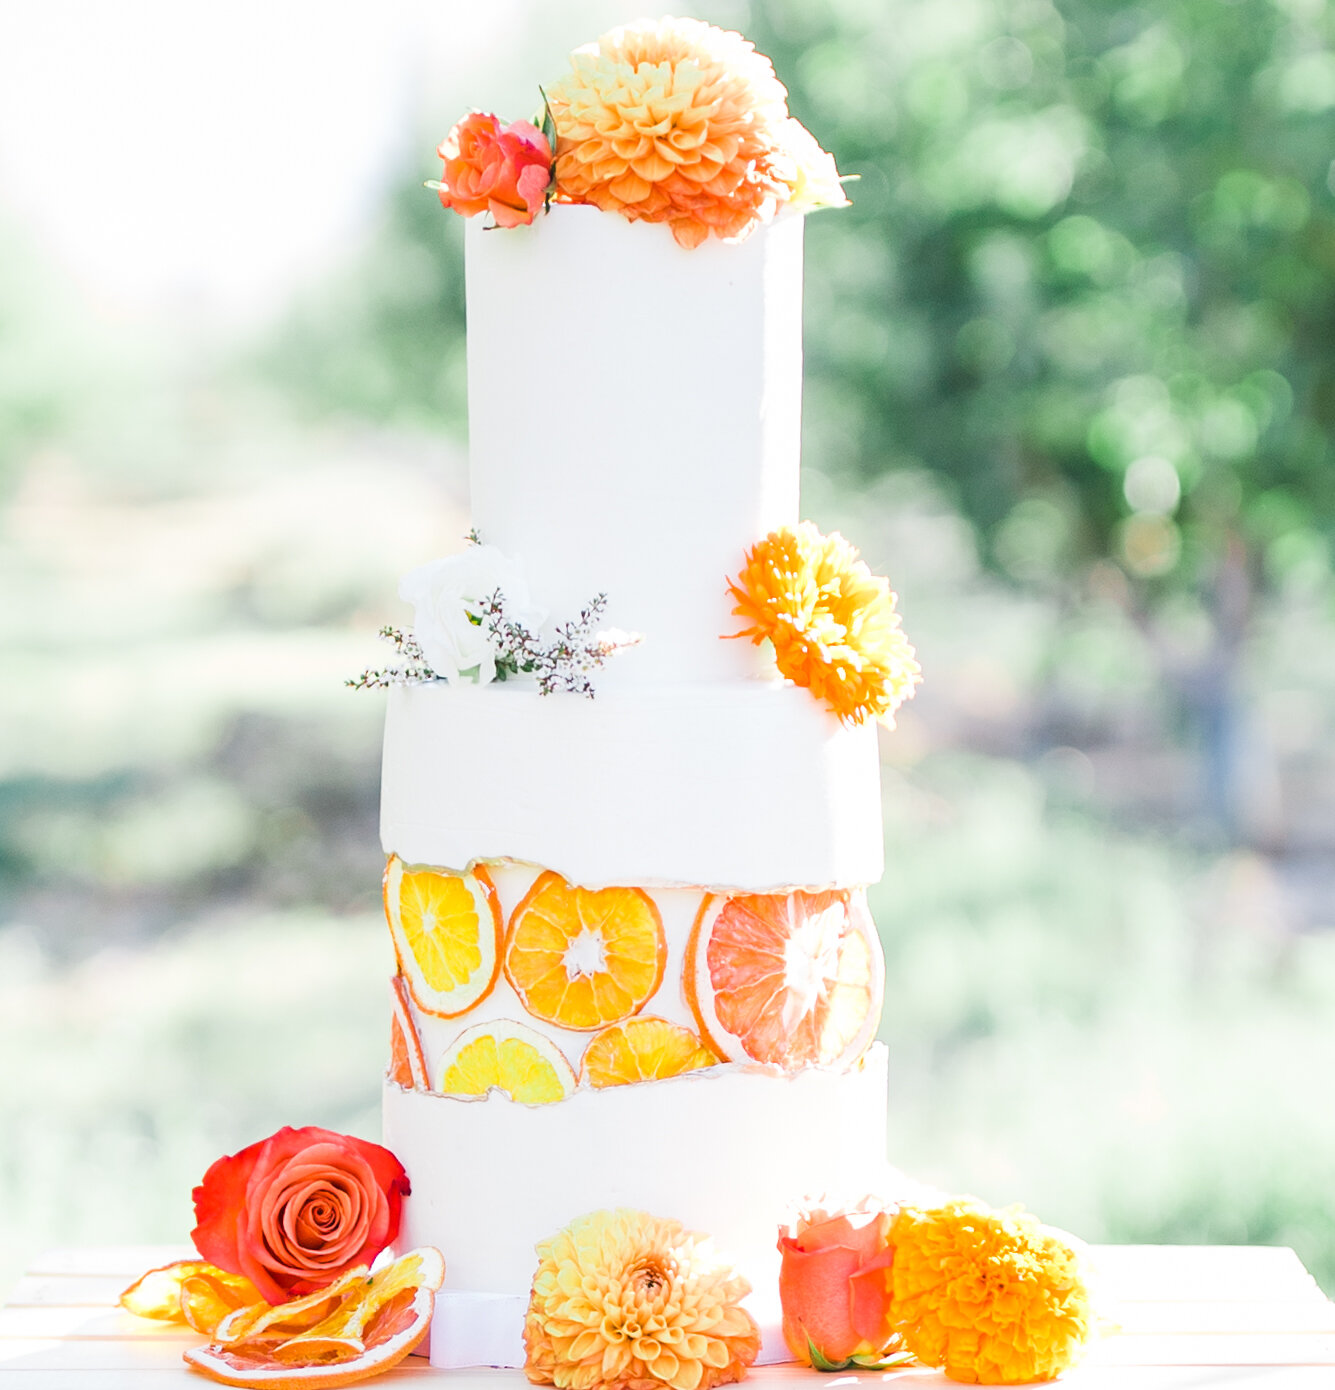 grapefruit and orange wedding cake inspiration